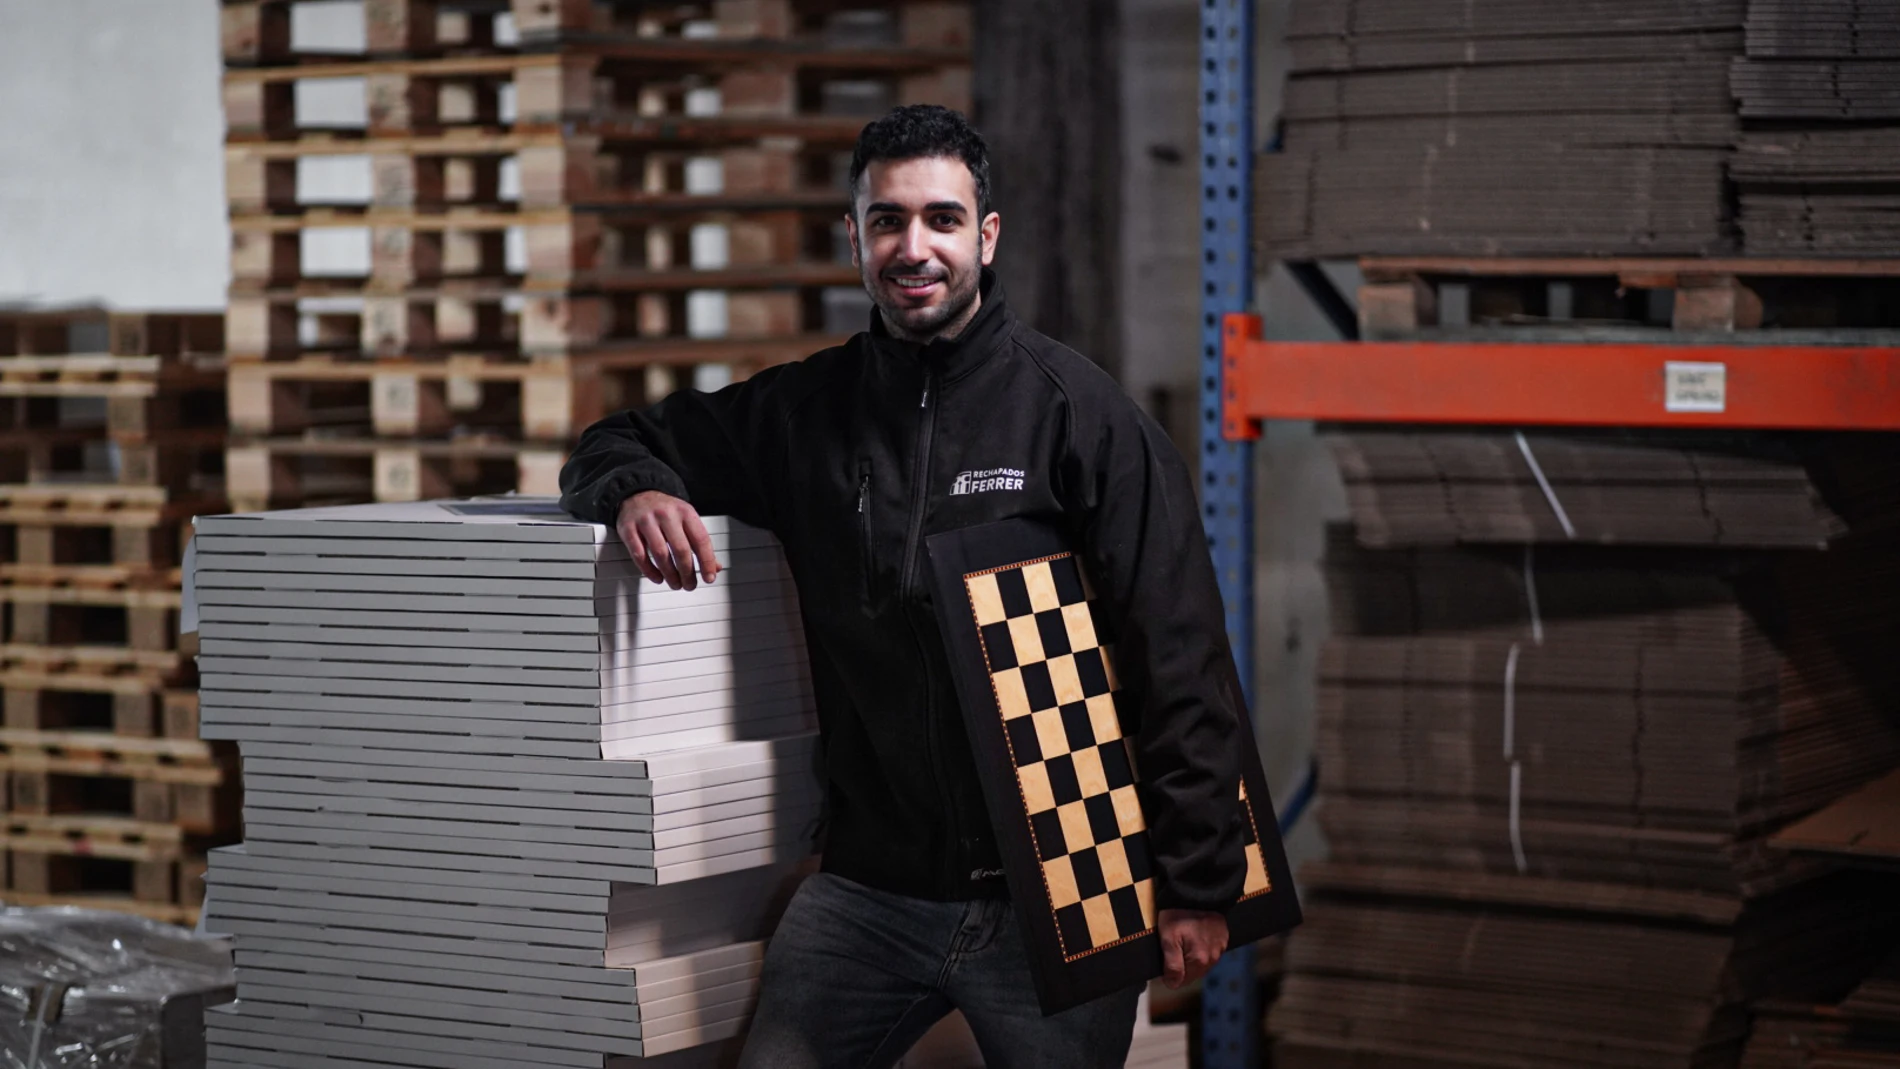 David Ferrer, es el gerente de Rechapados Ferrer, la empresa que fabrica los tableros de ajedrez que aparecen en Gambito de Dama